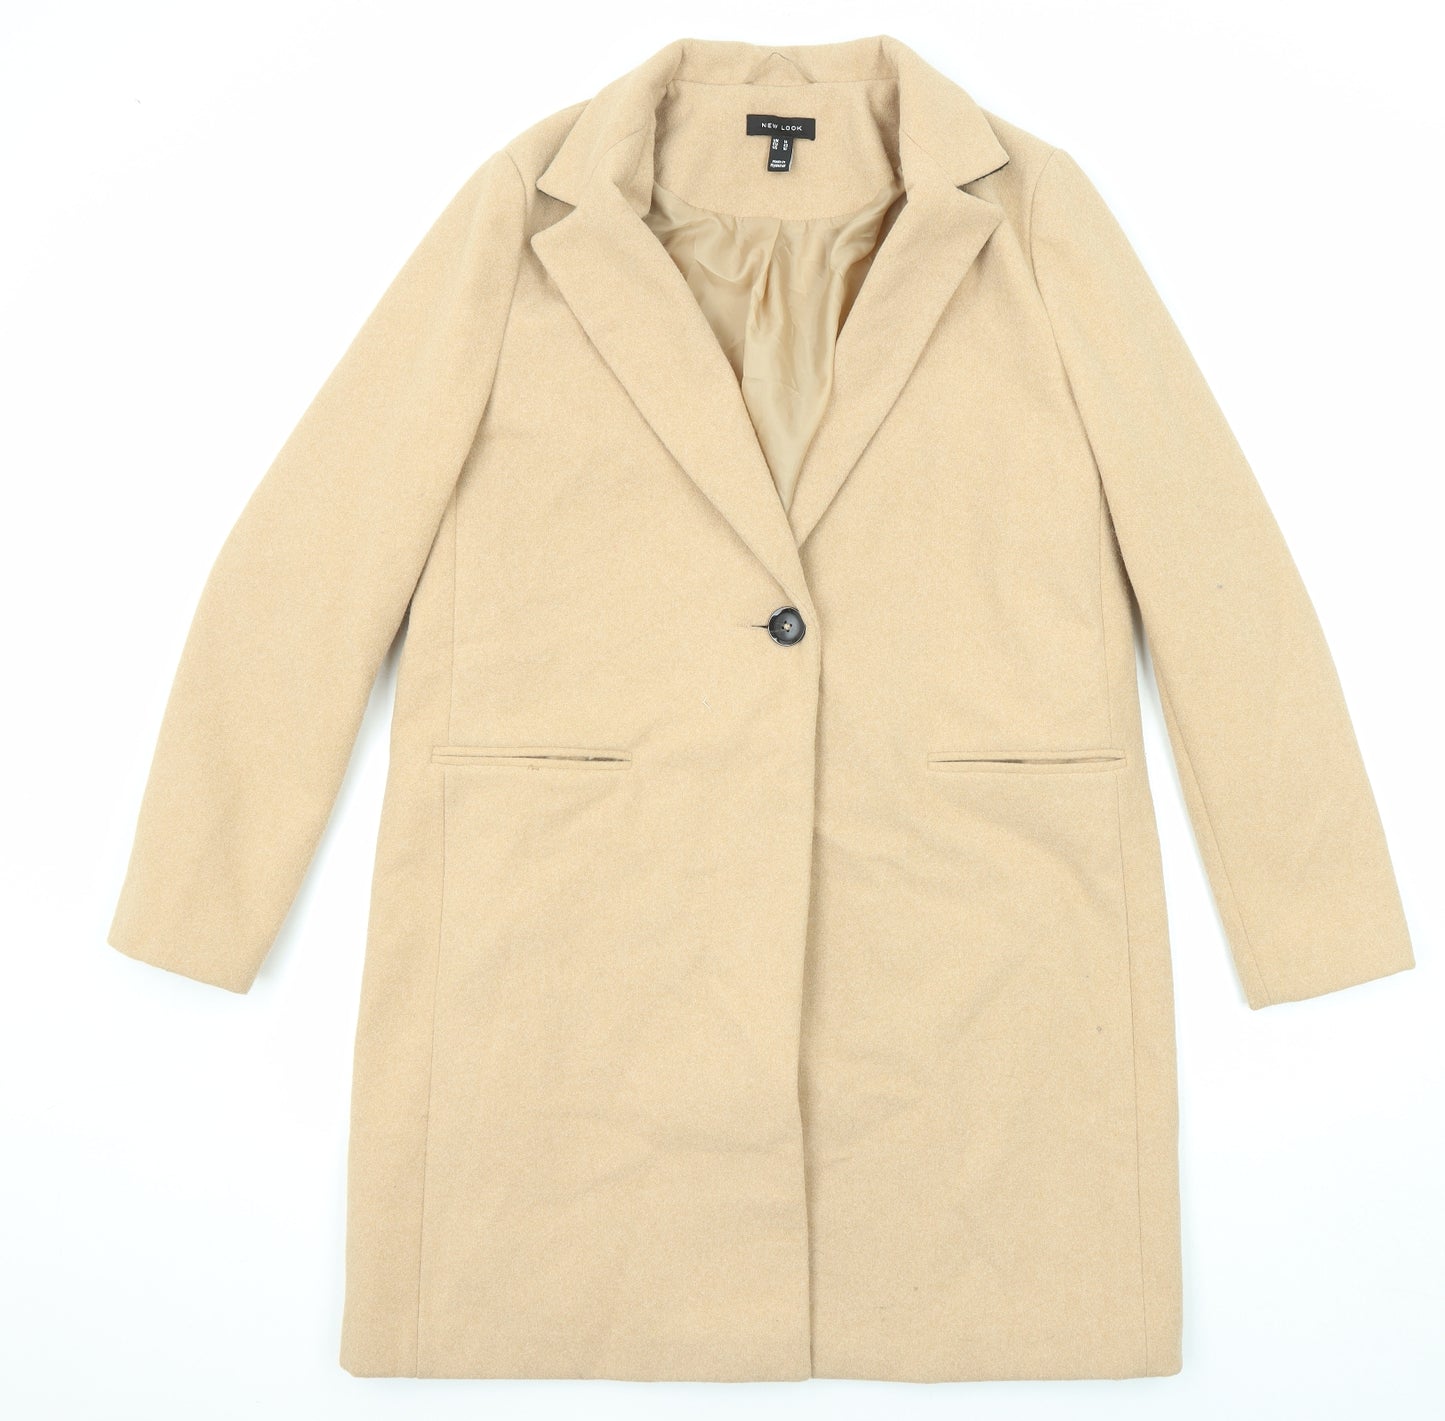 New Look Womens Beige Overcoat Coat Size 14 Button